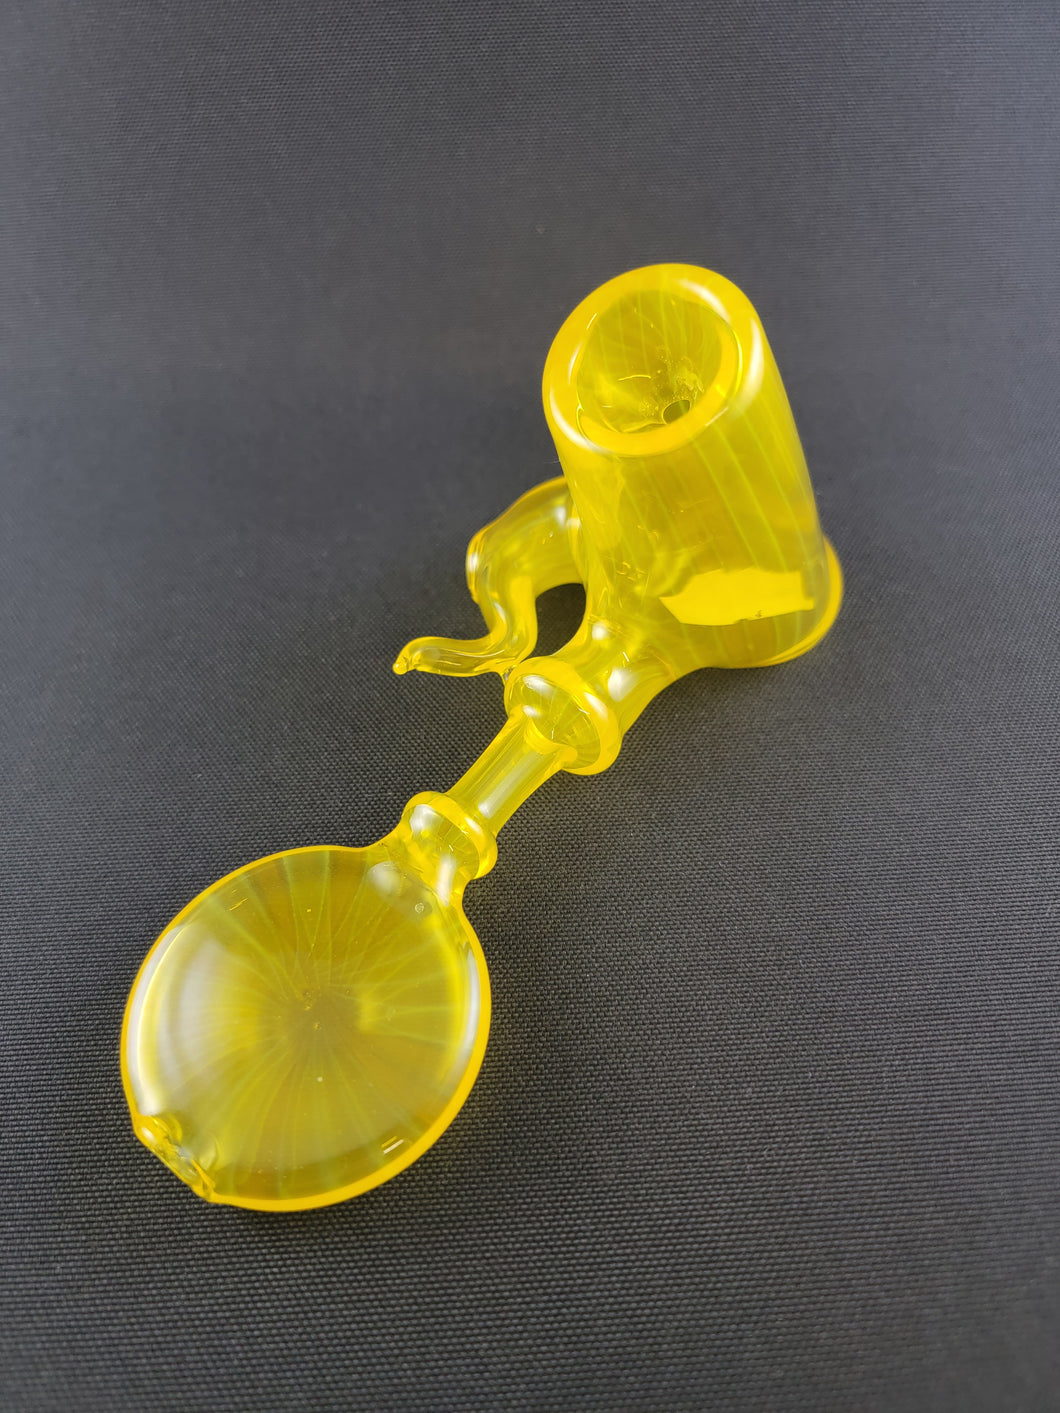 Parison Glass Lemon Party Hammer Bowl Pipe